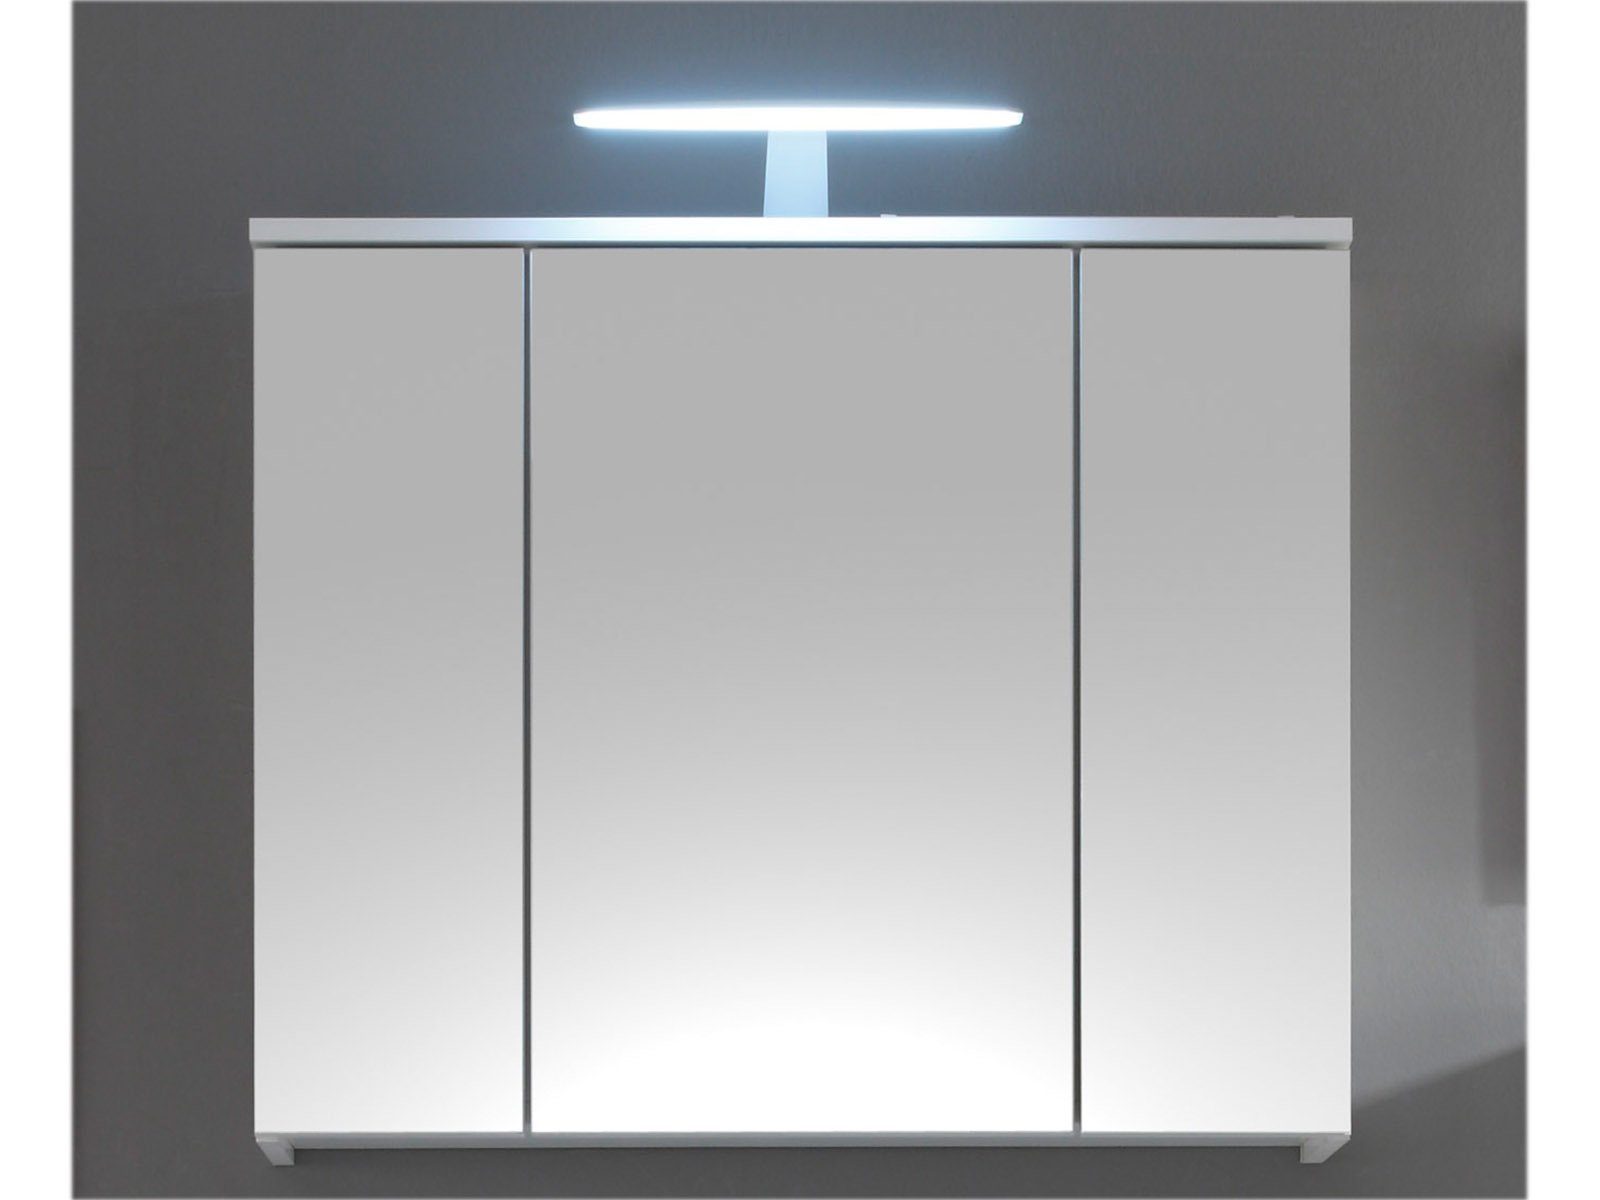 möbelando Spiegelschrank Suzette Moderner Spiegelschrank, Korpus aus Spanplatte in Weiß mit 3 Spiegeltüren und 3 Einlegböden, inkl. LED-Beleuchtung. Breite 80 cm, Höhe 67 cm, Tiefe 20 cm.